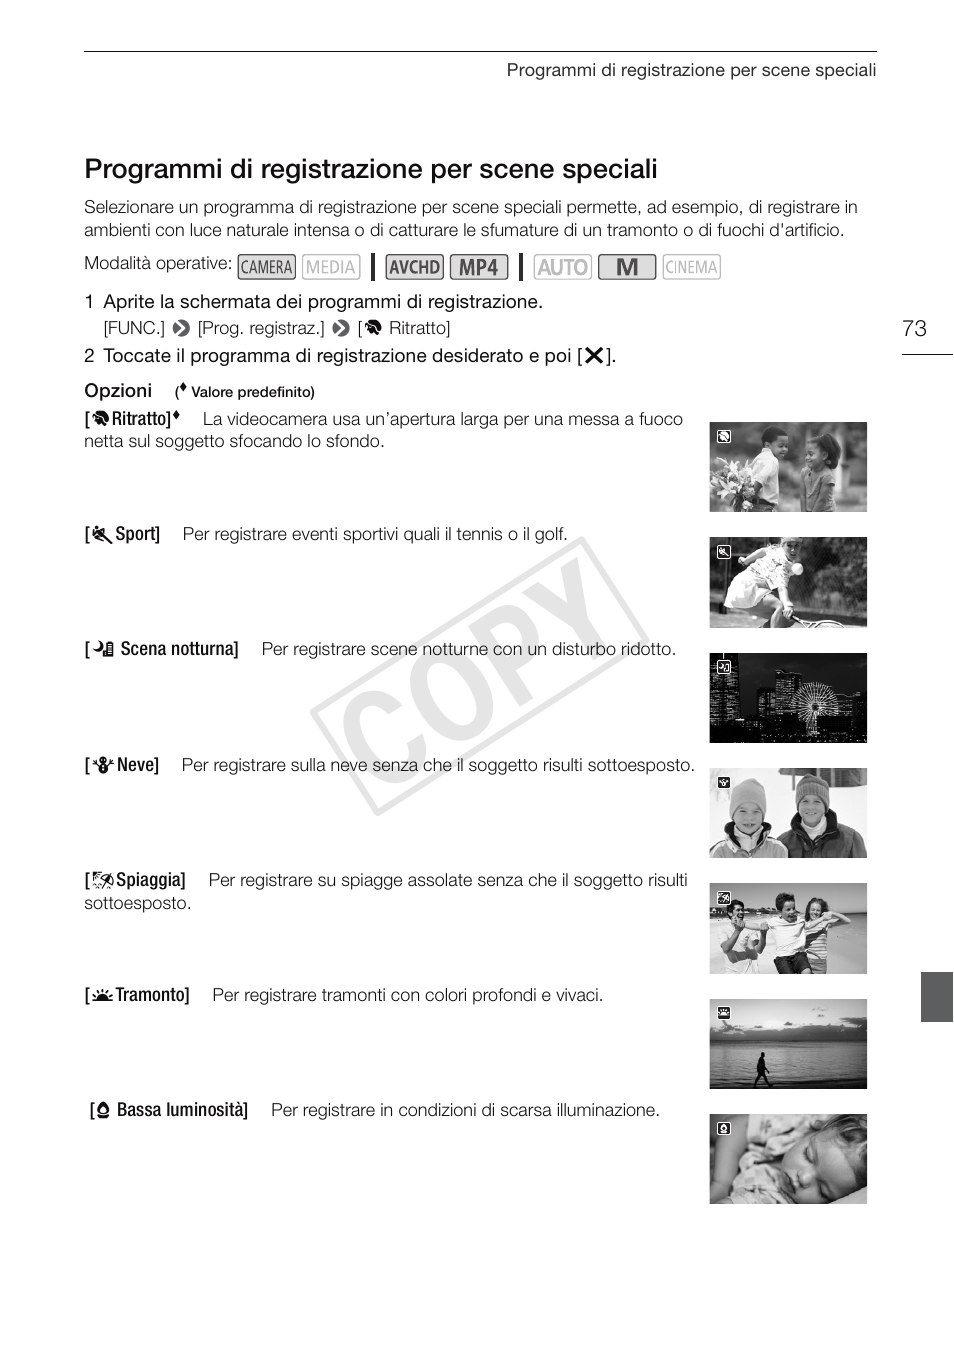 Programmi di registrazione per scene, Speciali 73, Cop y | Programmi di registrazione per scene speciali | Canon XA25 Manuale d'uso | Pagina 73 / 186